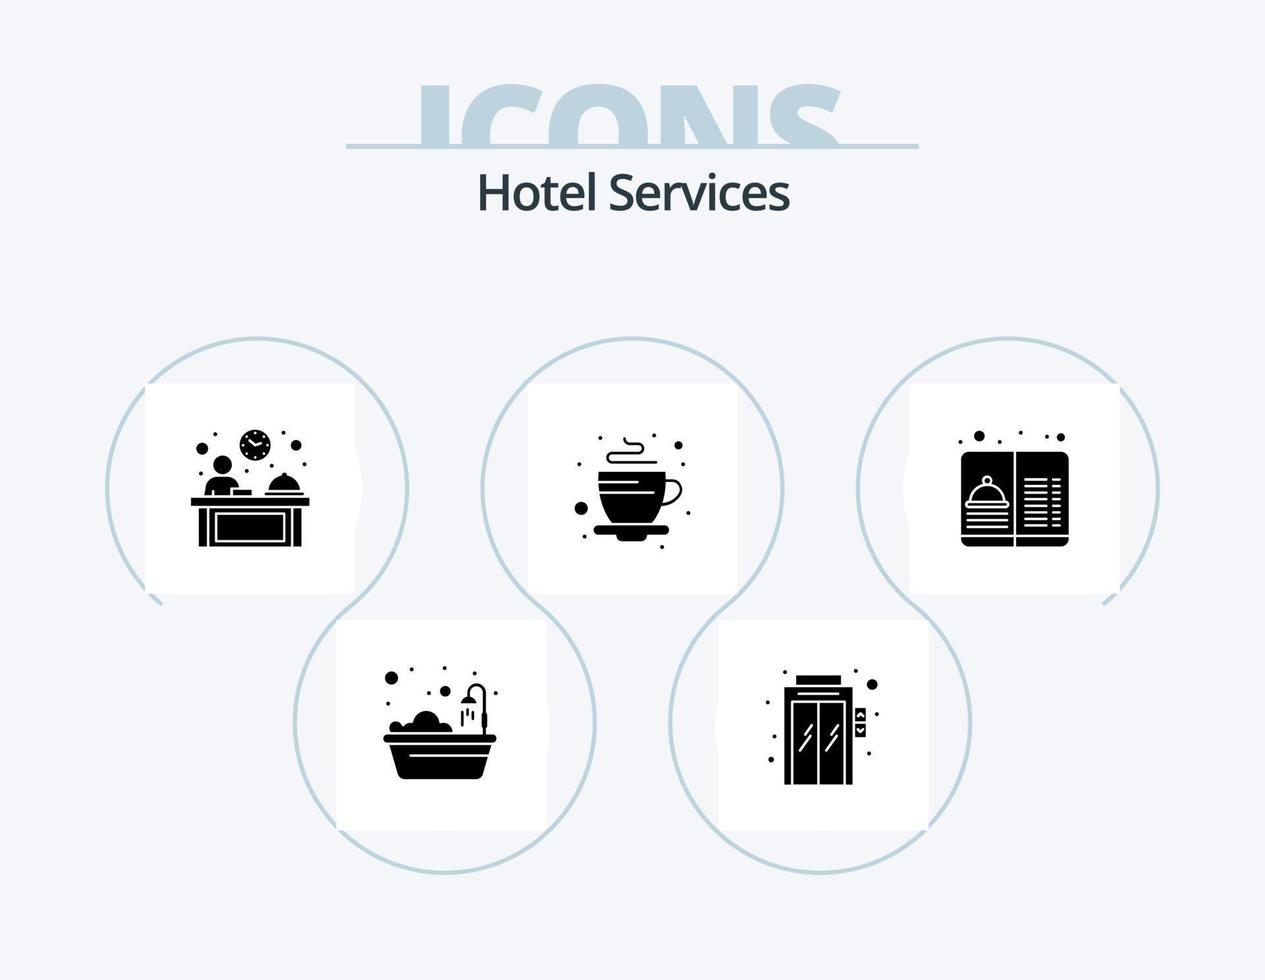 servicios de hotel glyph icon pack 5 diseño de iconos. servicio. hotel. hotel. café. caliente vector